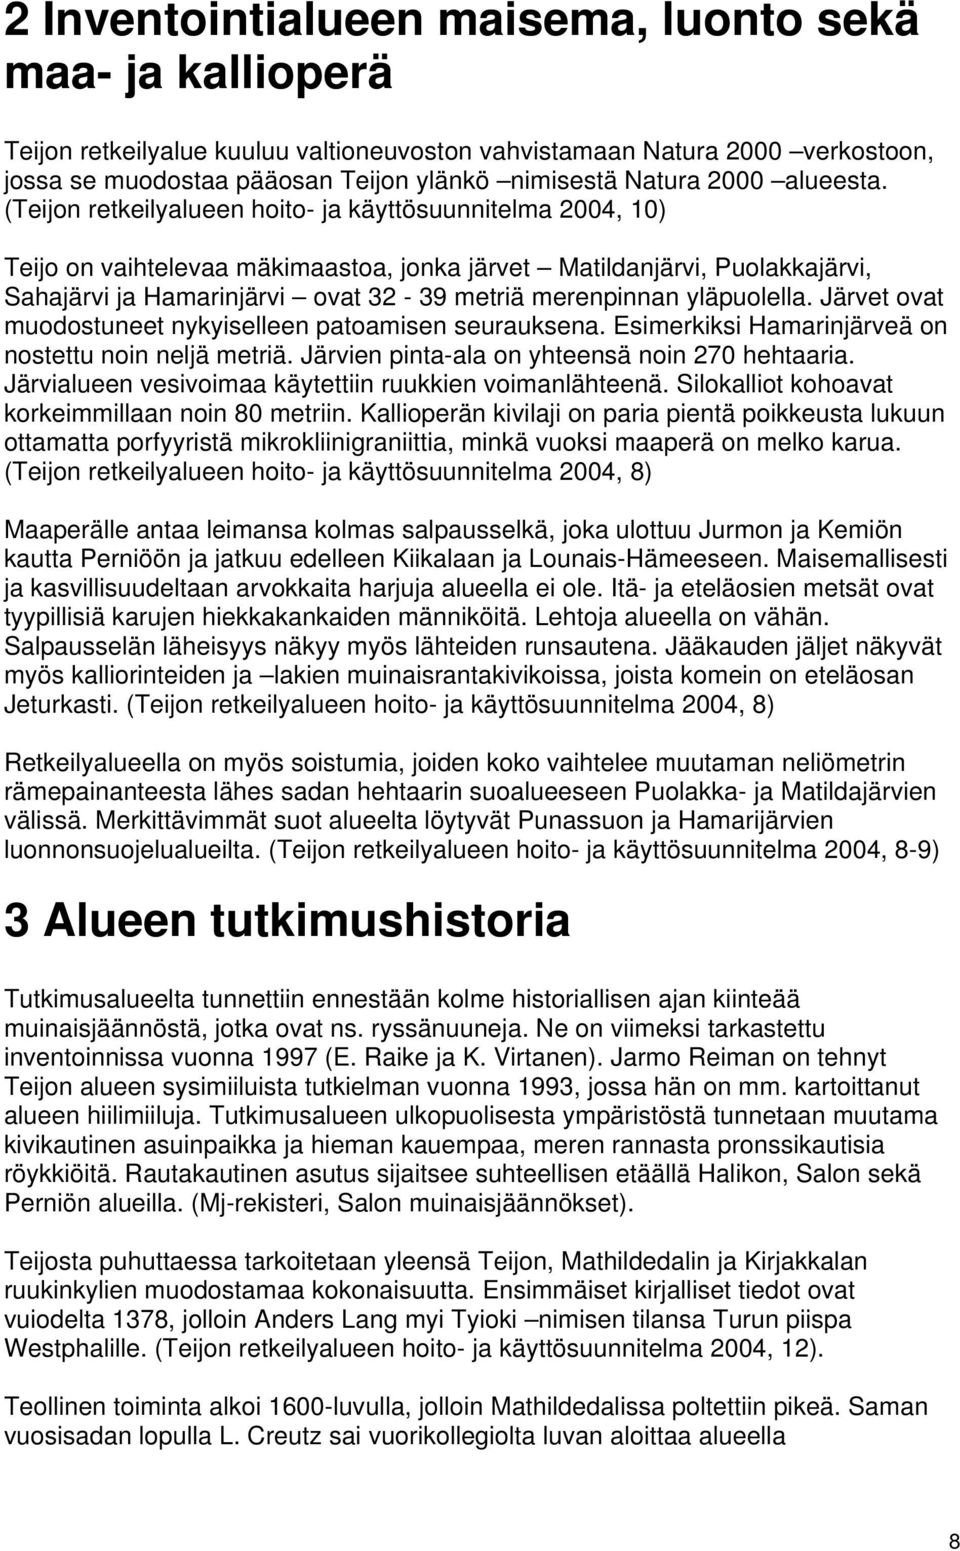 (Teijon retkeilyalueen hoito- ja käyttösuunnitelma 2004, 10) Teijo on vaihtelevaa mäkimaastoa, jonka järvet Matildanjärvi, Puolakkajärvi, Sahajärvi ja Hamarinjärvi ovat 32-39 metriä merenpinnan